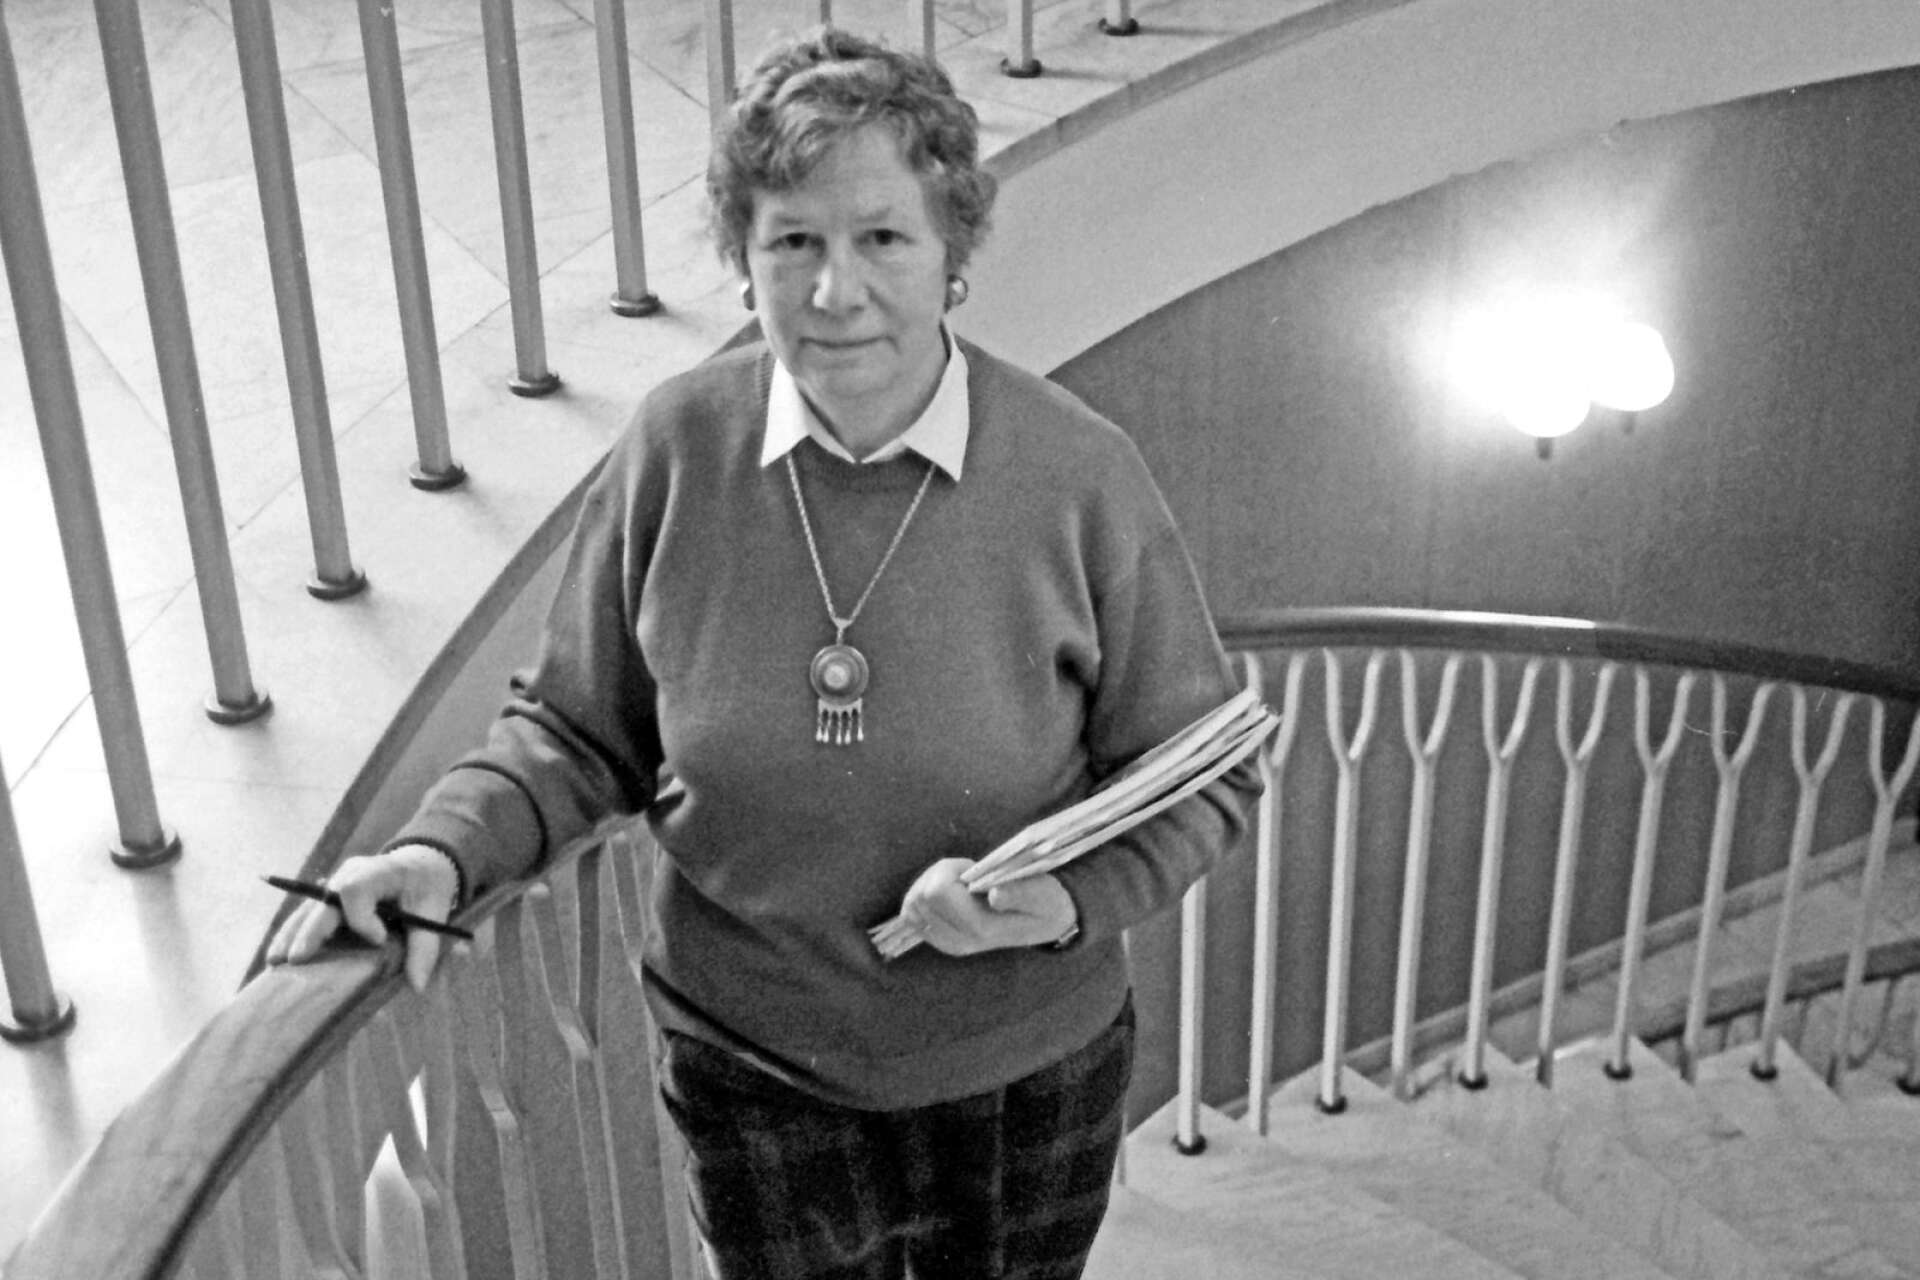 I 30 år arbetade Ingrid Einevik som lågstadielärare och speciallärare i Säffles skolor. Sedan följde en period där stadshuset blev hennes arbetsplats.